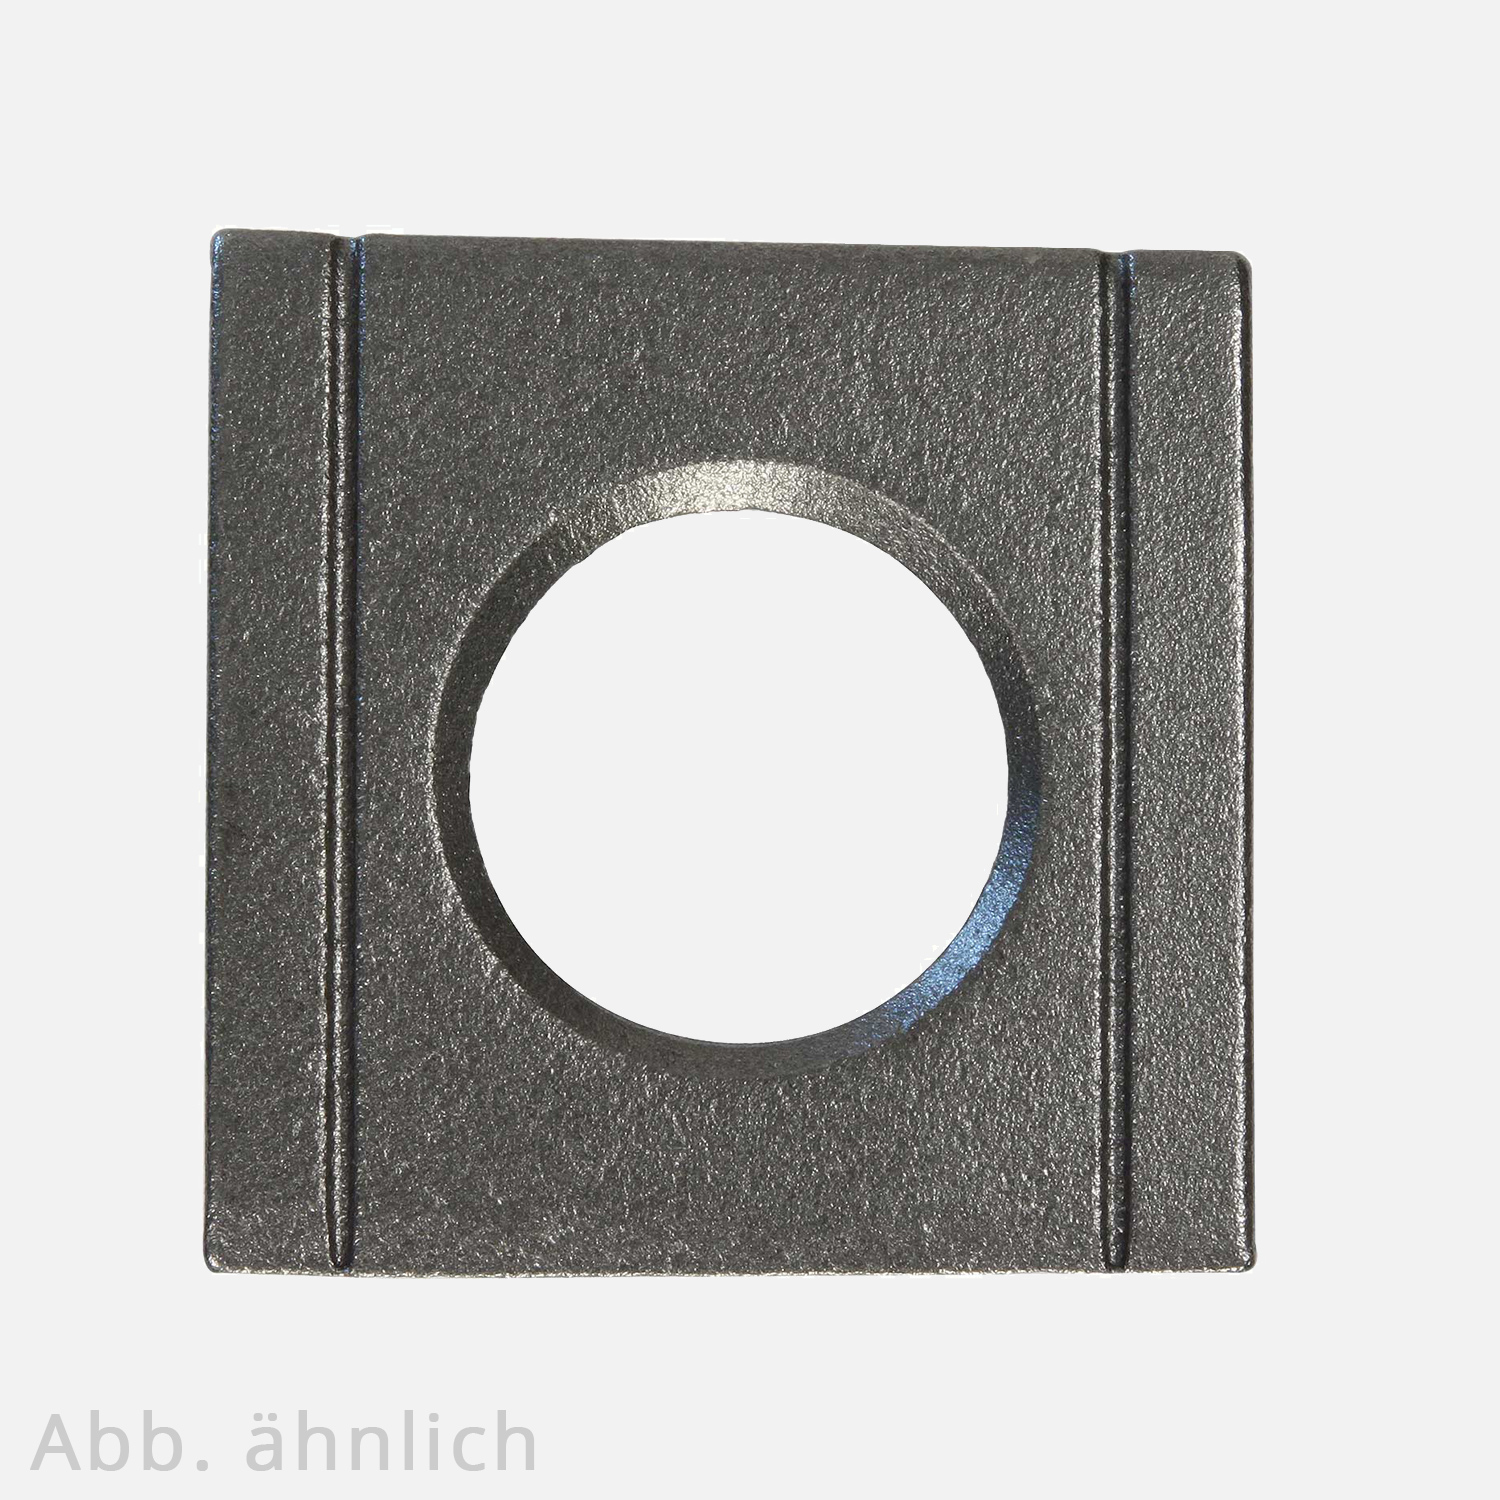 1 Vierkantscheibe - keilförmig 8% - 17 mm - DIN 6918 - Stahl vergütet